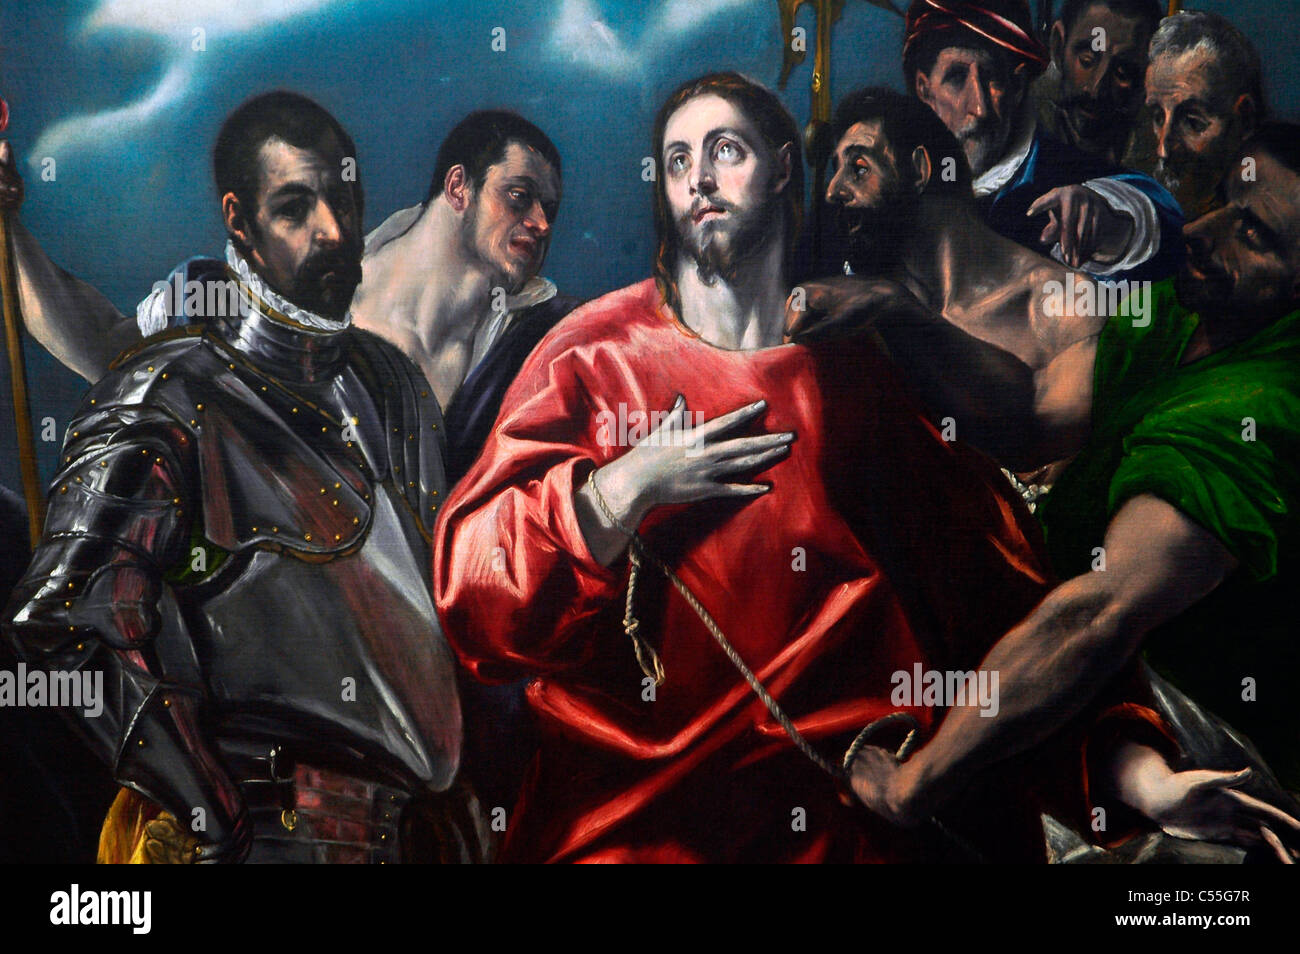 Huile sur toile de peintre espagnol El Greco affichée à l'Szepmuveszeti Muzeum museum à Budapest Hongrie Banque D'Images